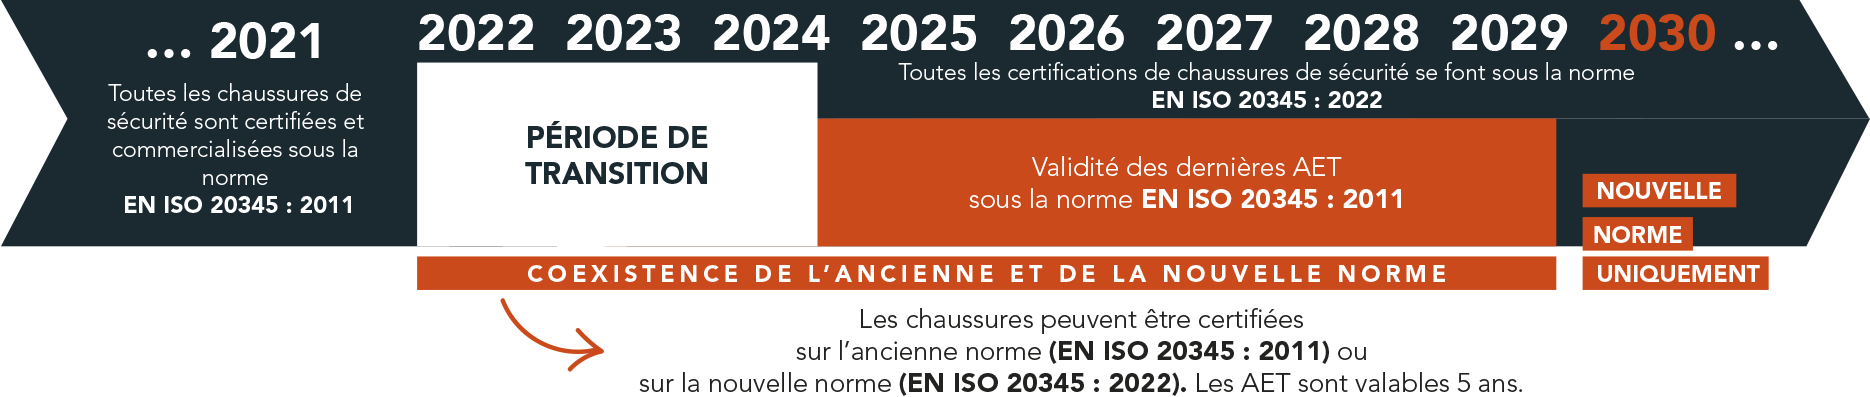 évolution des normes de 2021 à 2029, période de transition